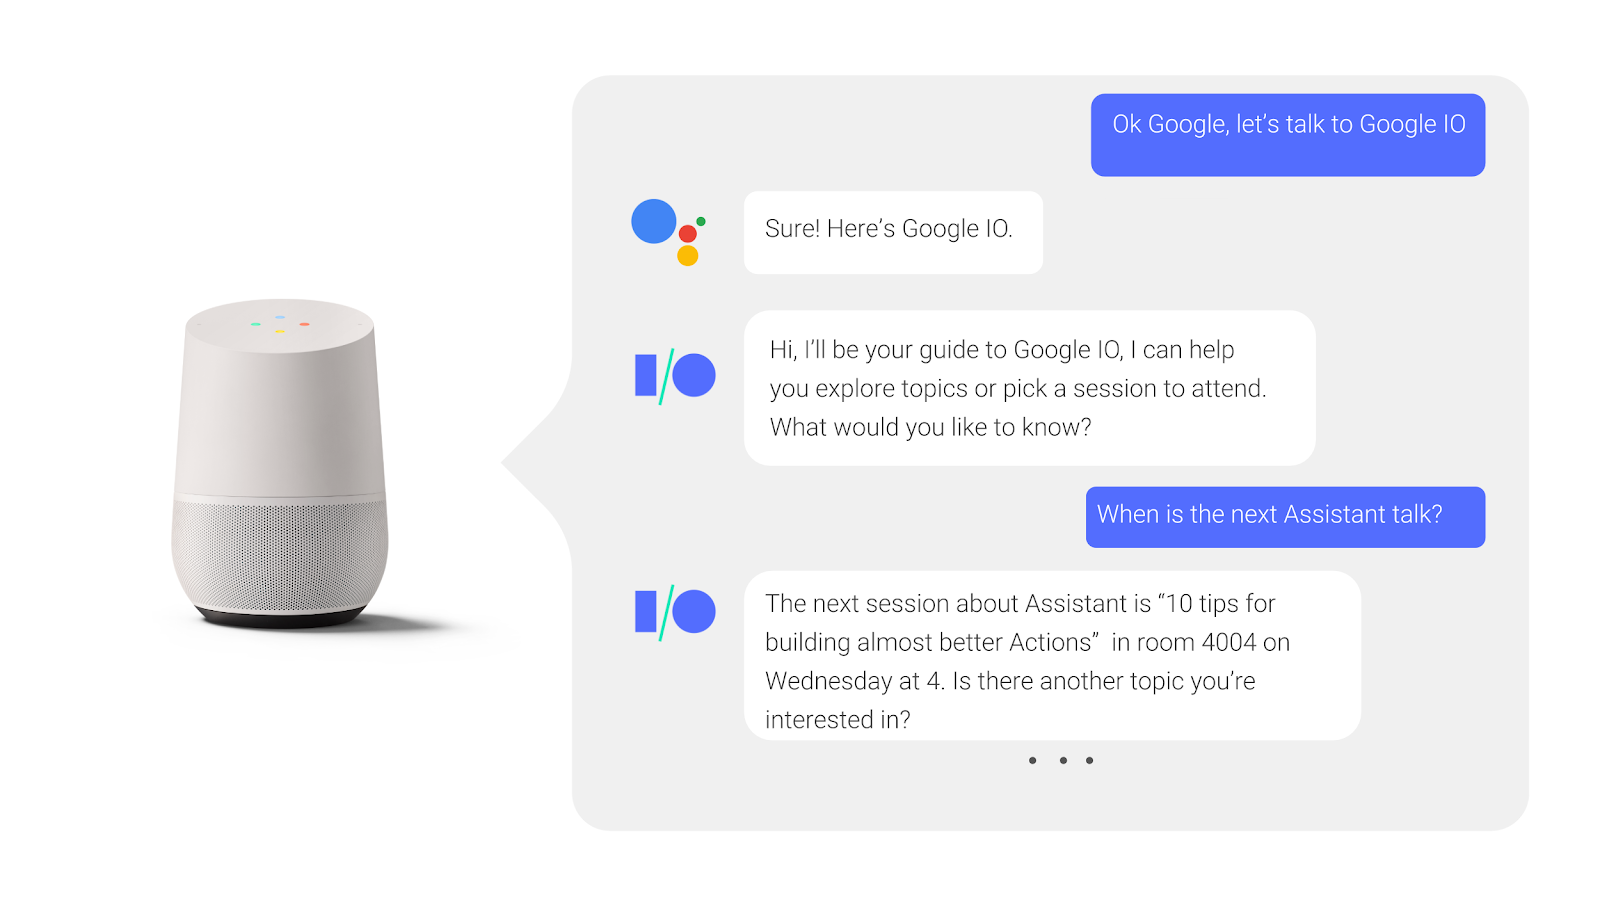 ในการสนทนาโต้ตอบไปมากับ Google Assistant ผู้ใช้ถามถึงและได้รับคำตอบเมื่อมีเซสชันการประชุมเกิดขึ้น